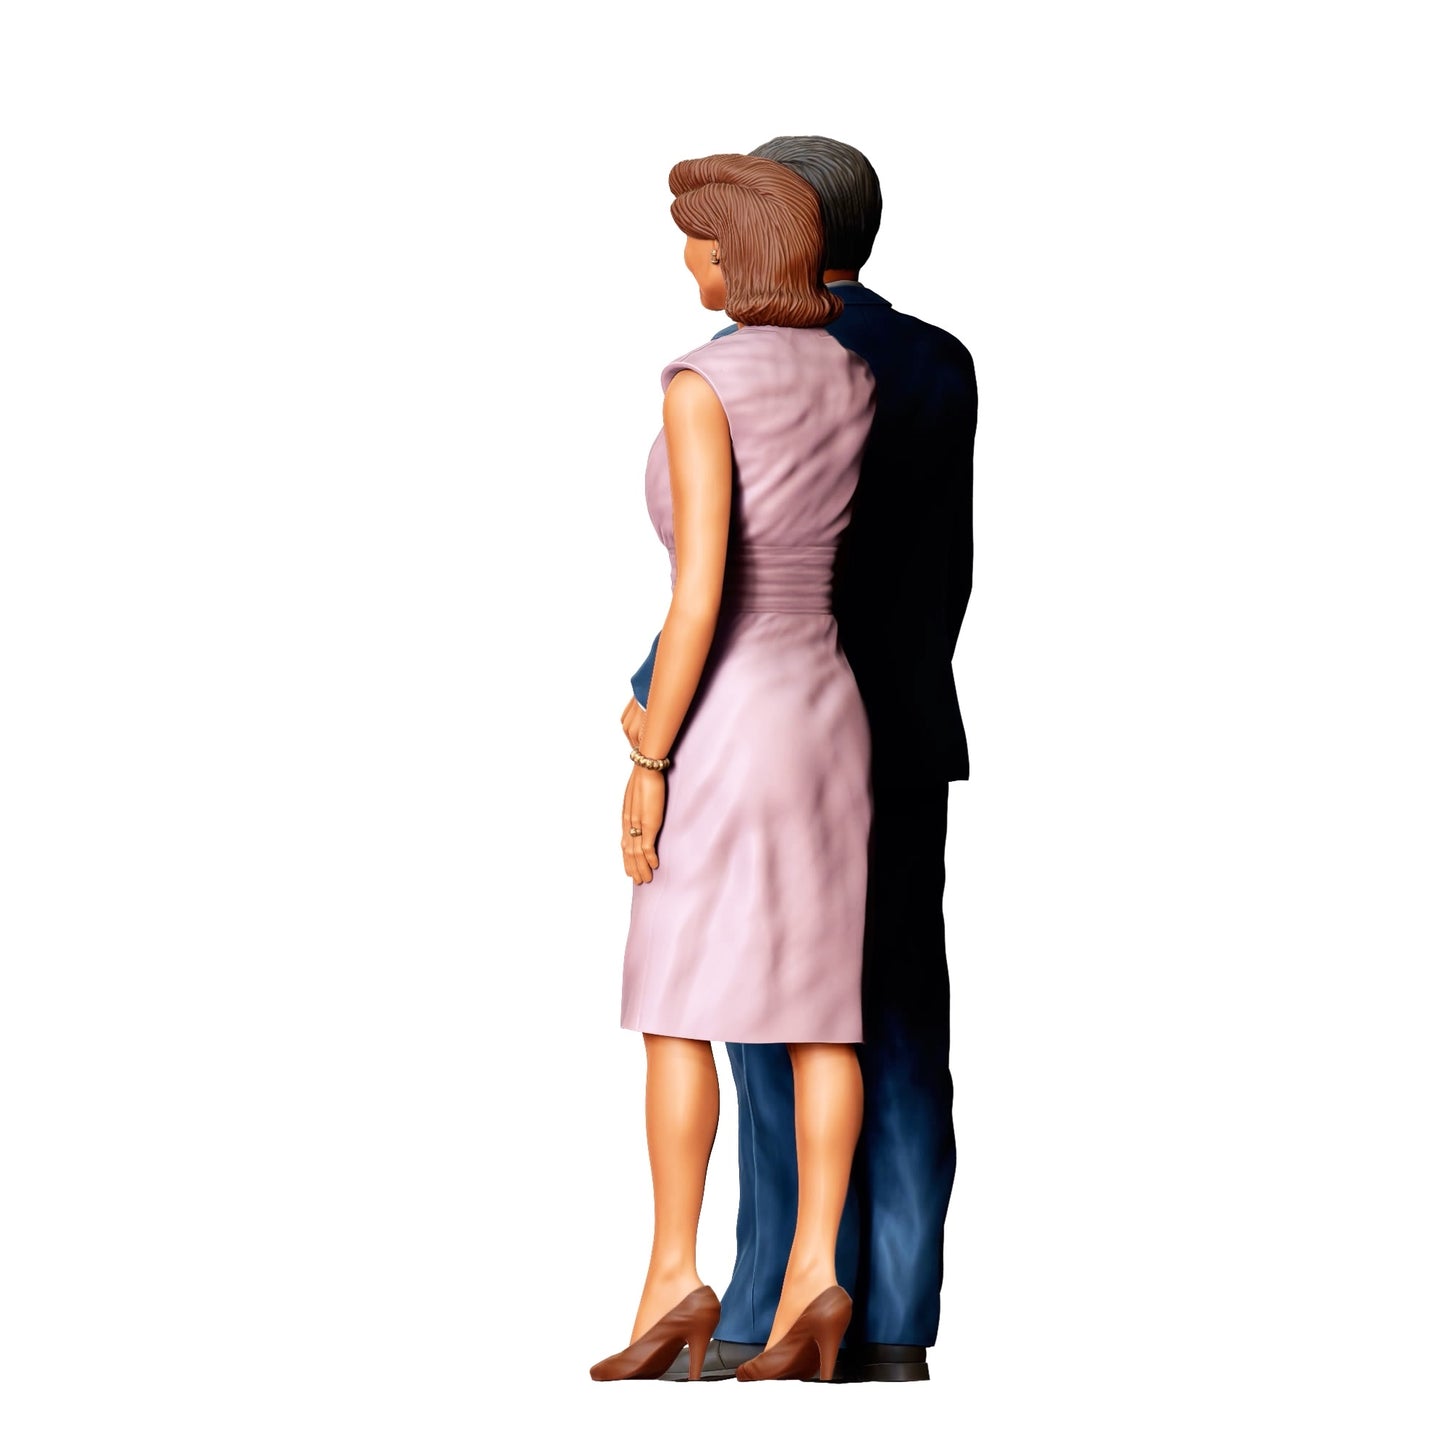 Diorama Modellbau Produktfoto 0: Mächtiger Mann mit seiner Frau - Oberhaupt der Nation (Ref. Nr. 332)